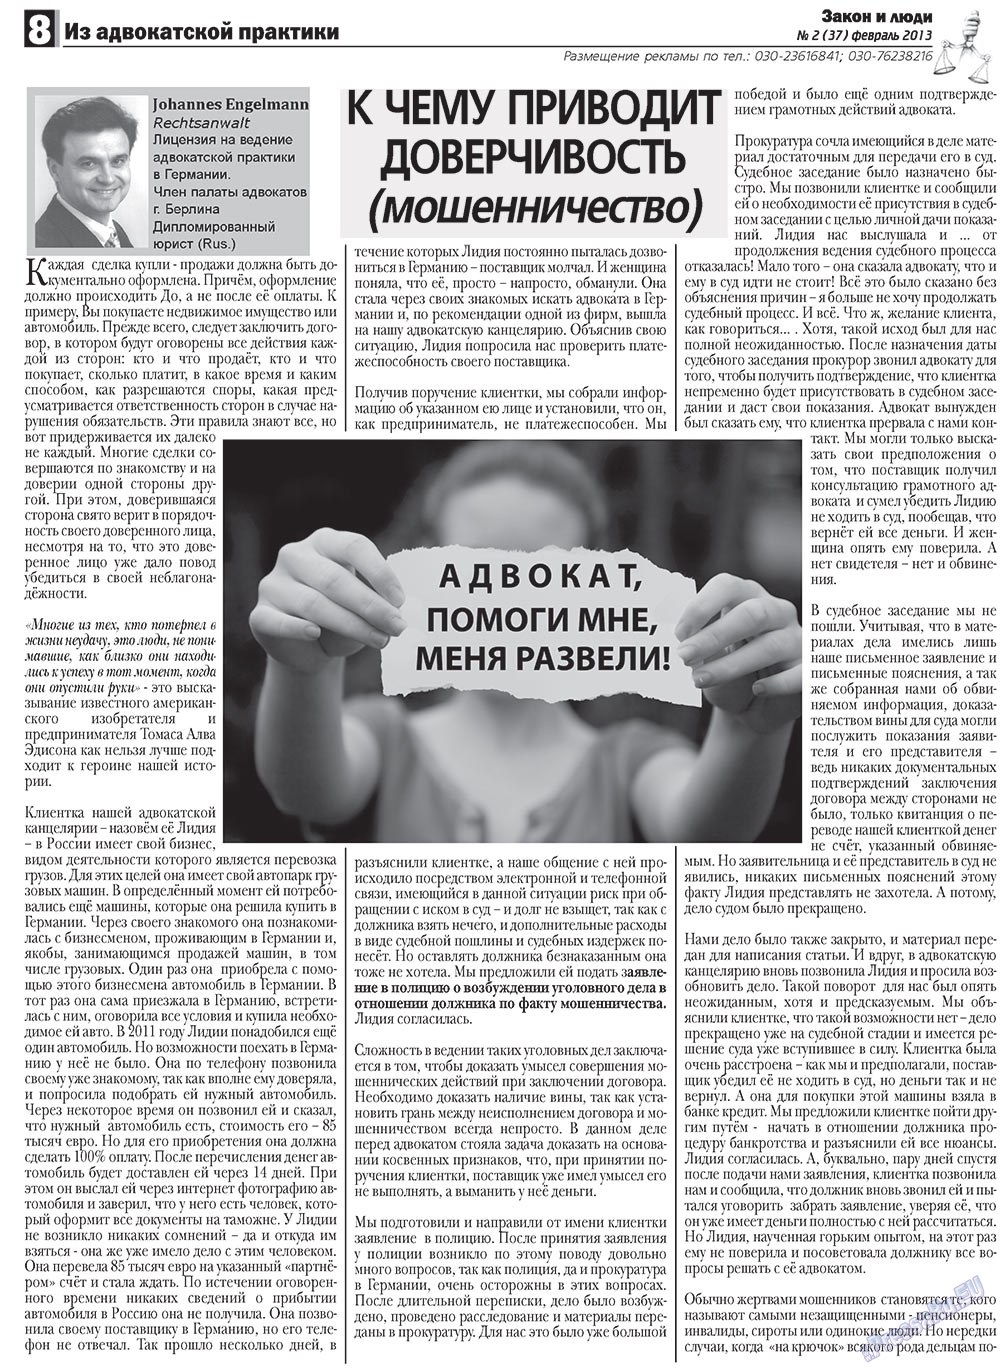 Закон и люди, газета. 2013 №2 стр.8